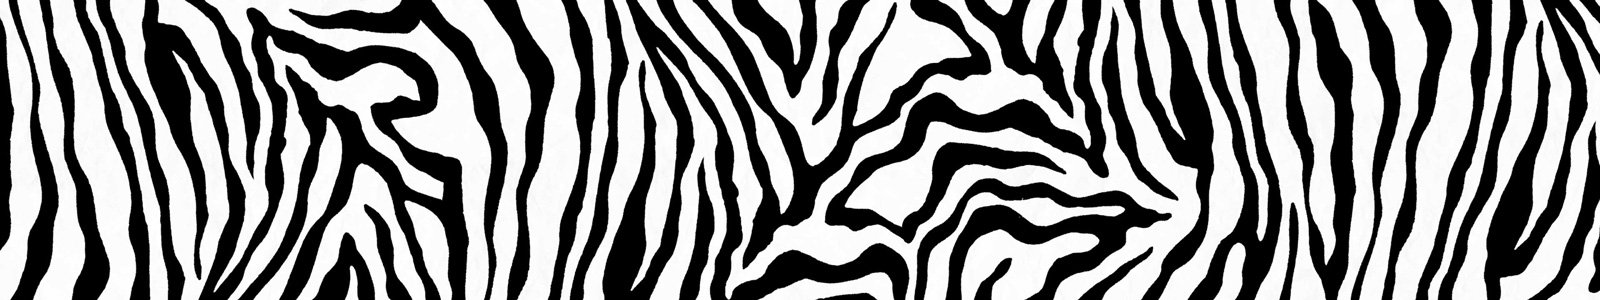 №6760 - Полоски, имитация полос зебры